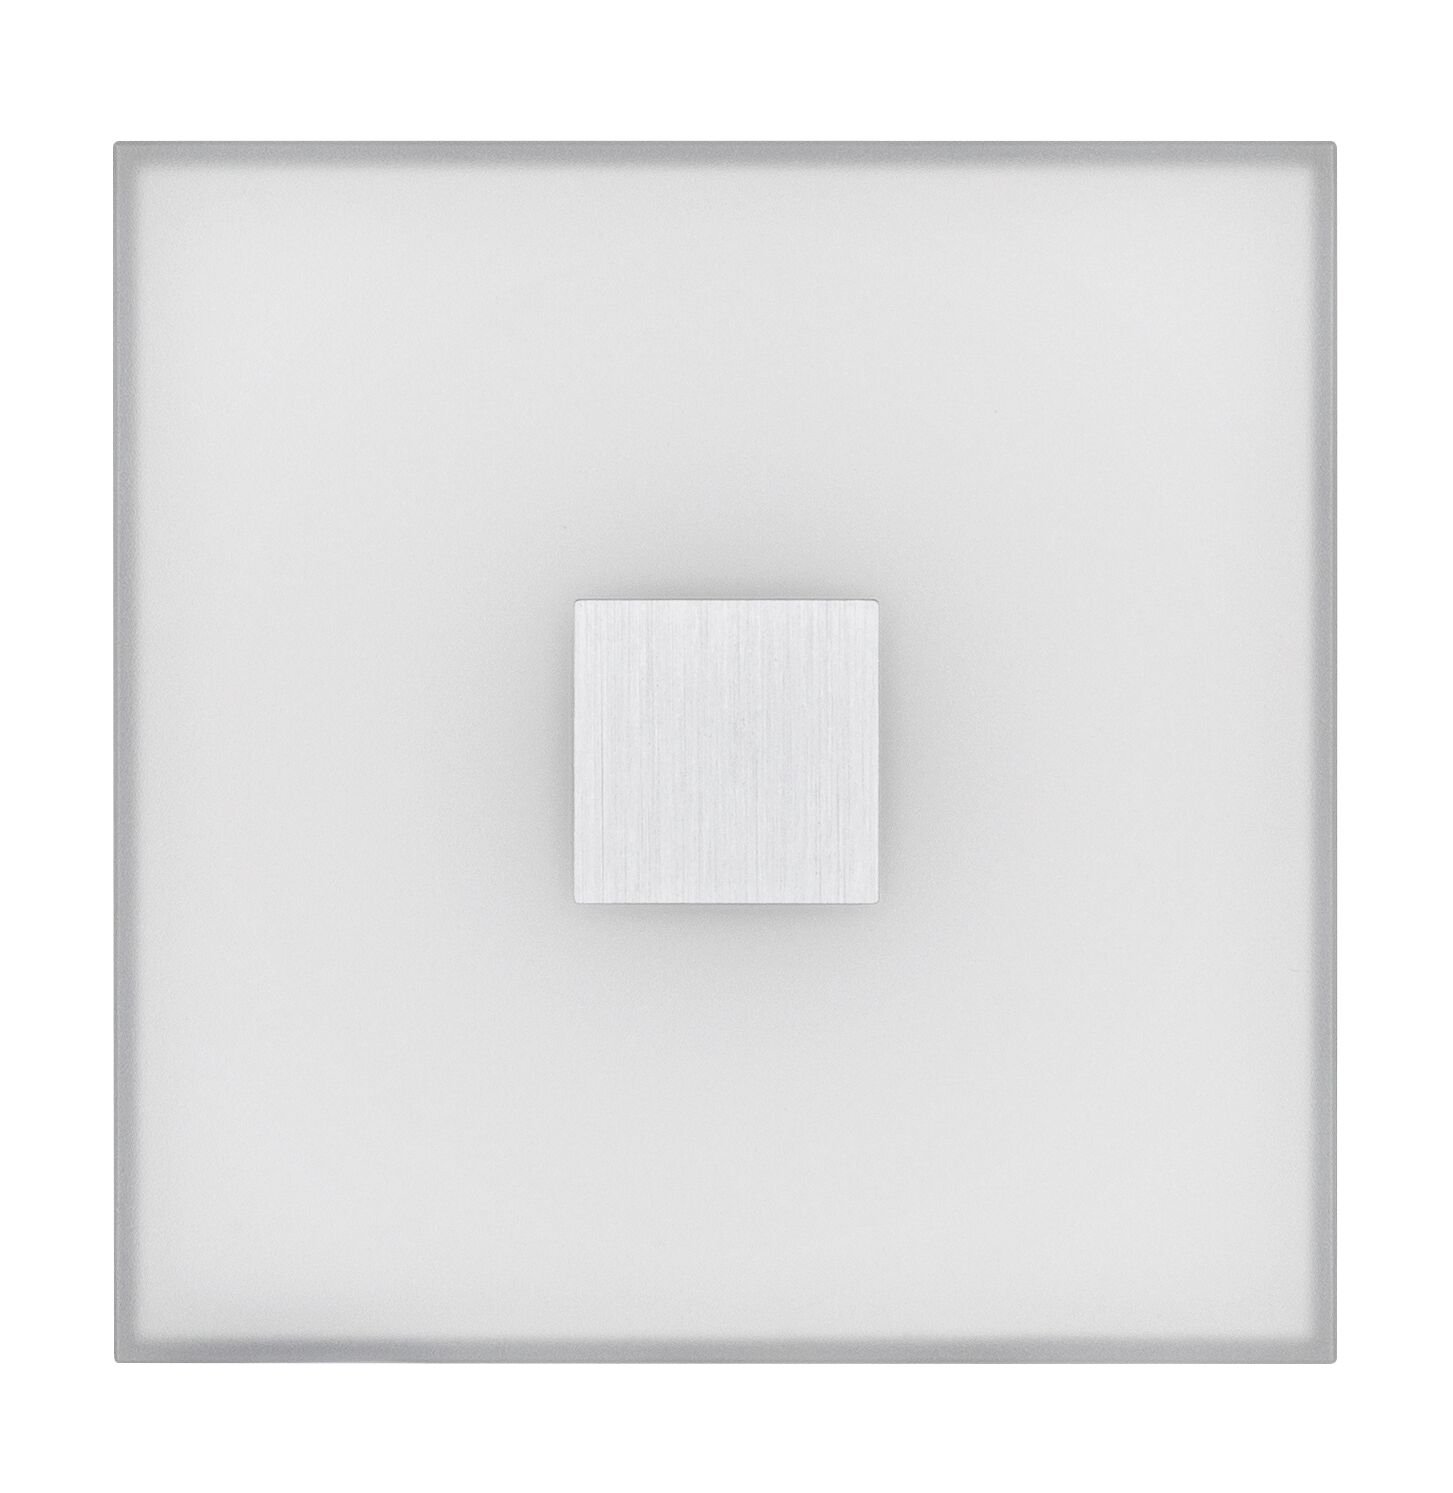 LumiTiles LED Fliesen Square Einzelfliese IP44 100x10mm 20lm 12V 0,8W 2700K Weiß Kunststoff/Aluminium